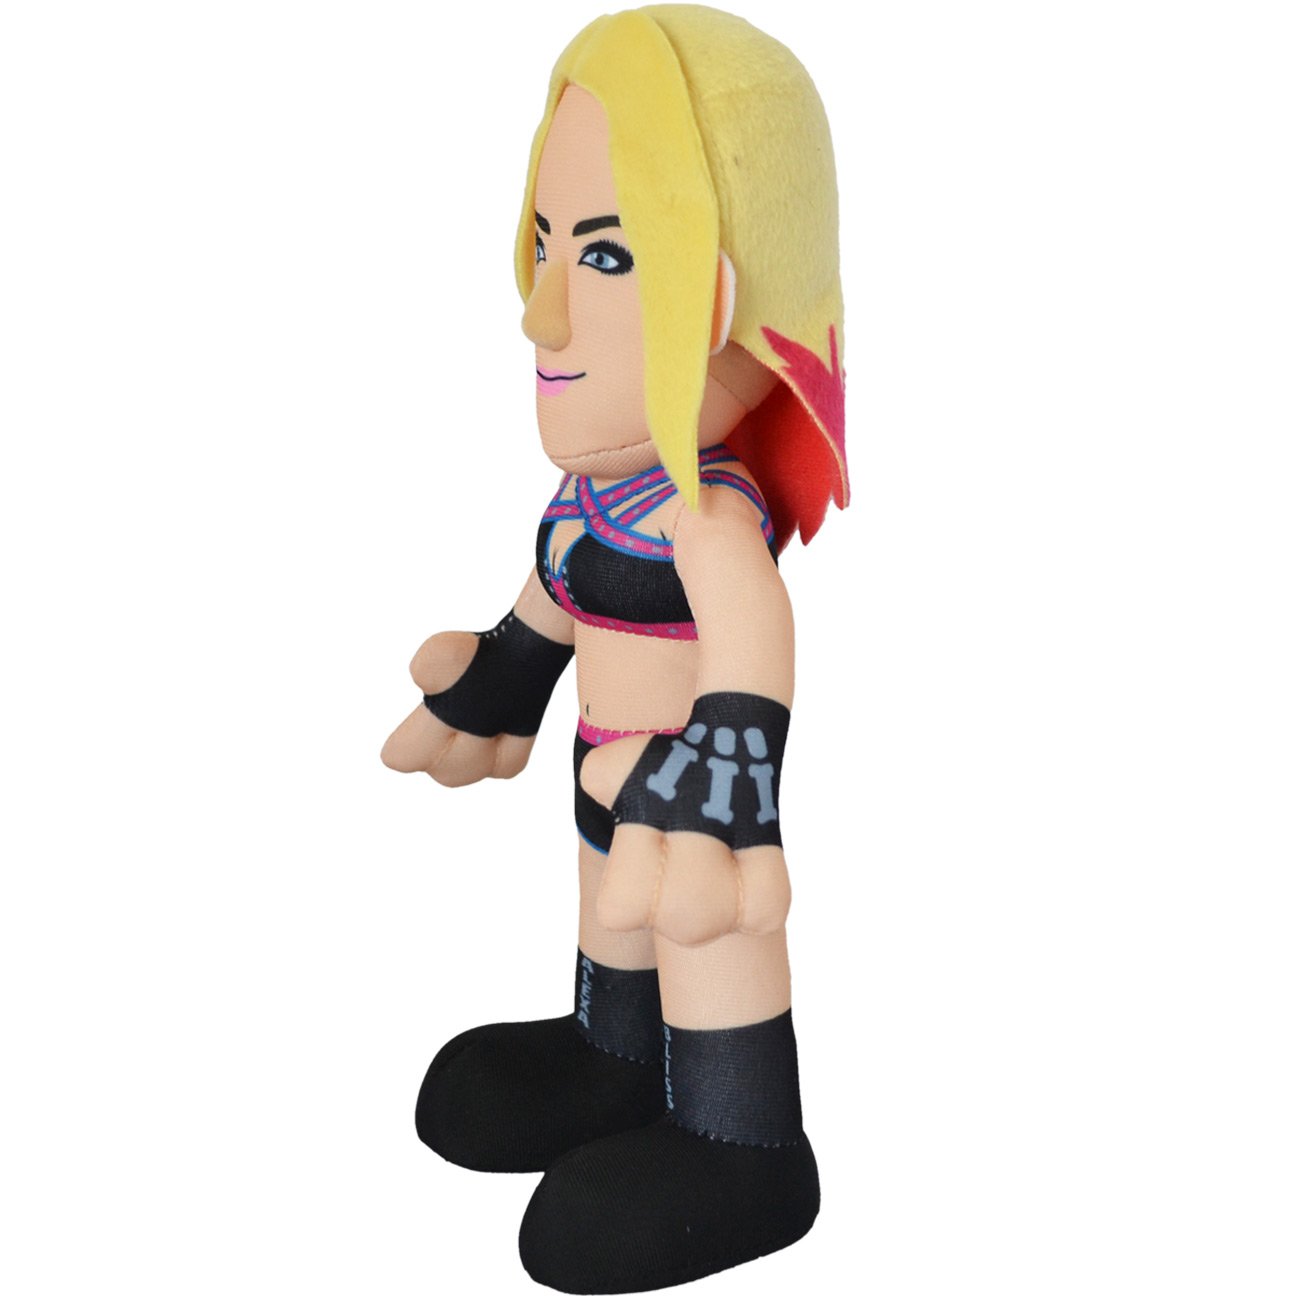 Bleacher Creatures WWE Diva Alexa Bliss 10&#x22; Plush Figure